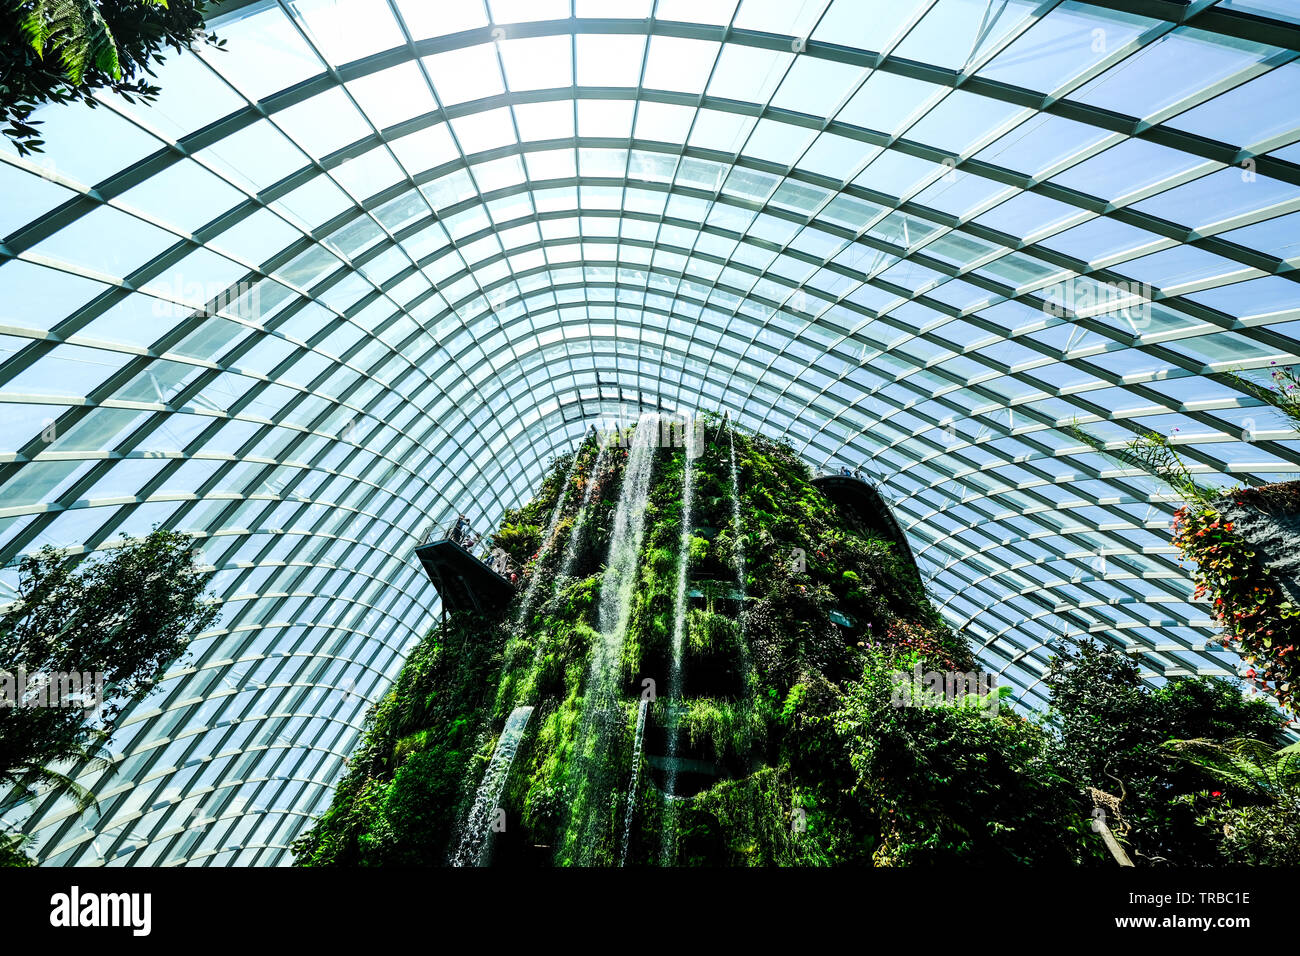 La plus haute cascade artificielle dans le monde à la forêt de nuages, les jardins de la baie, à Singapour Banque D'Images